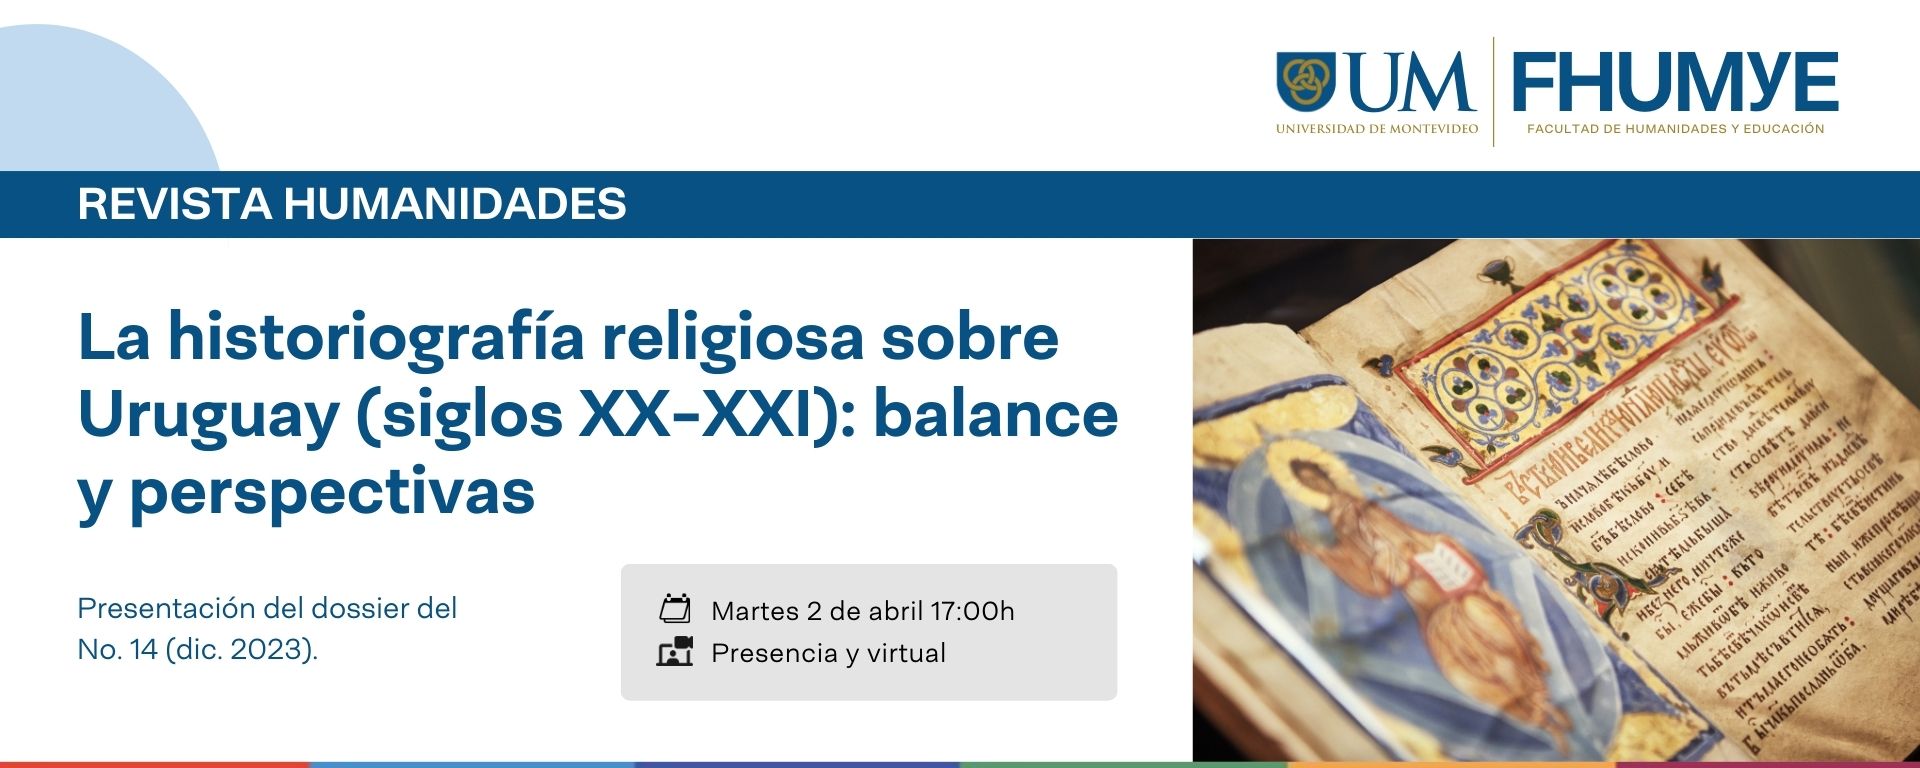 Revista Humanidades: La historiografía religiosa sobre Uruguay